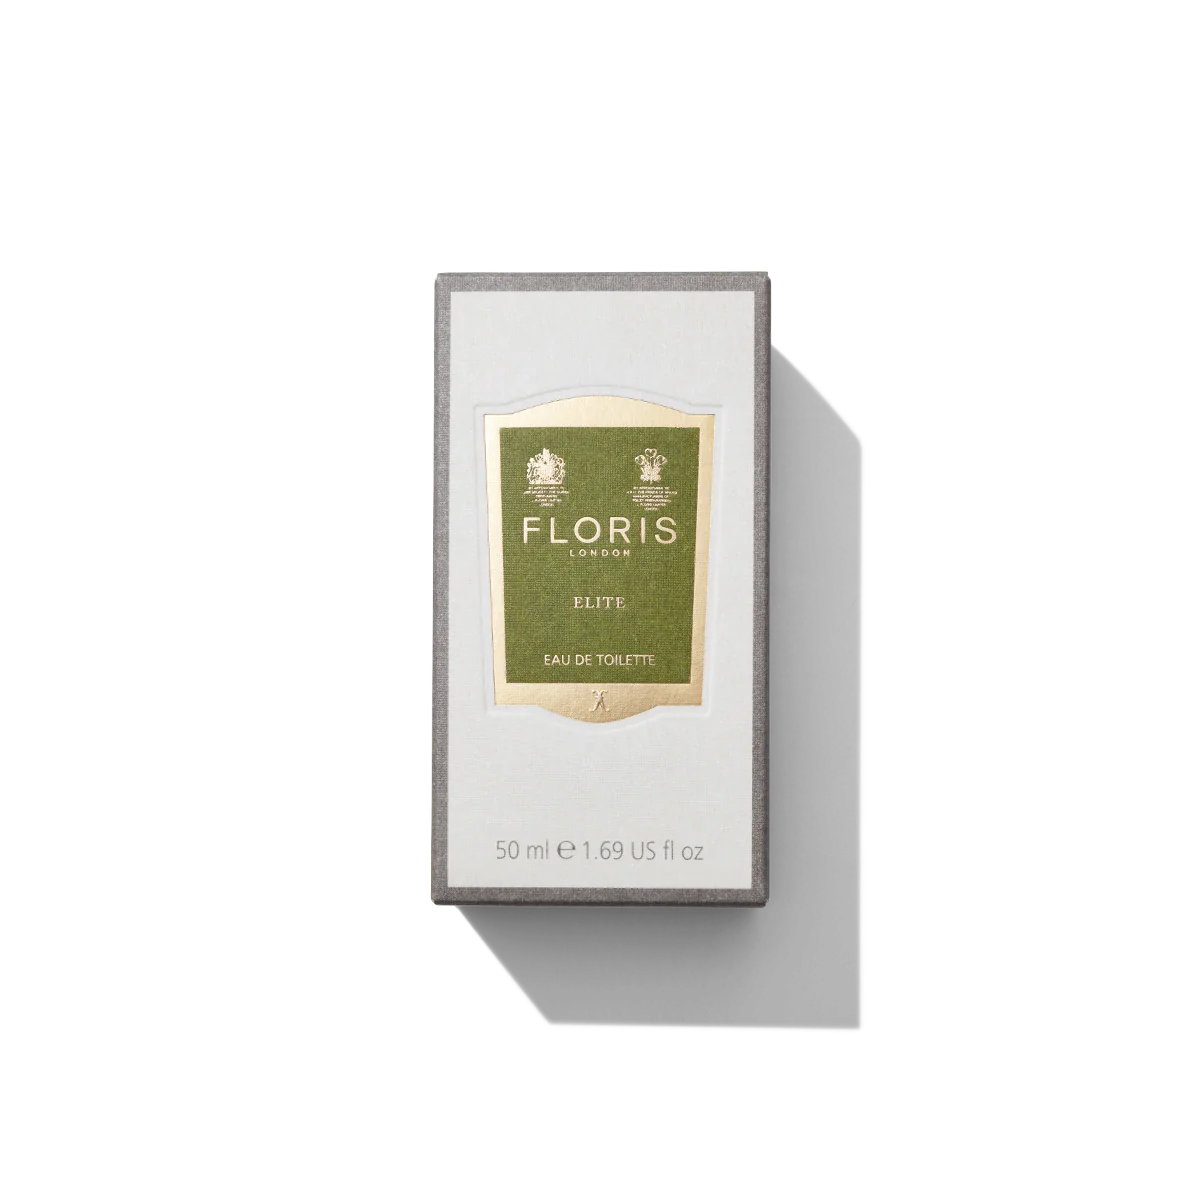 Floris London Elite Eau de Toilette 50ml Box